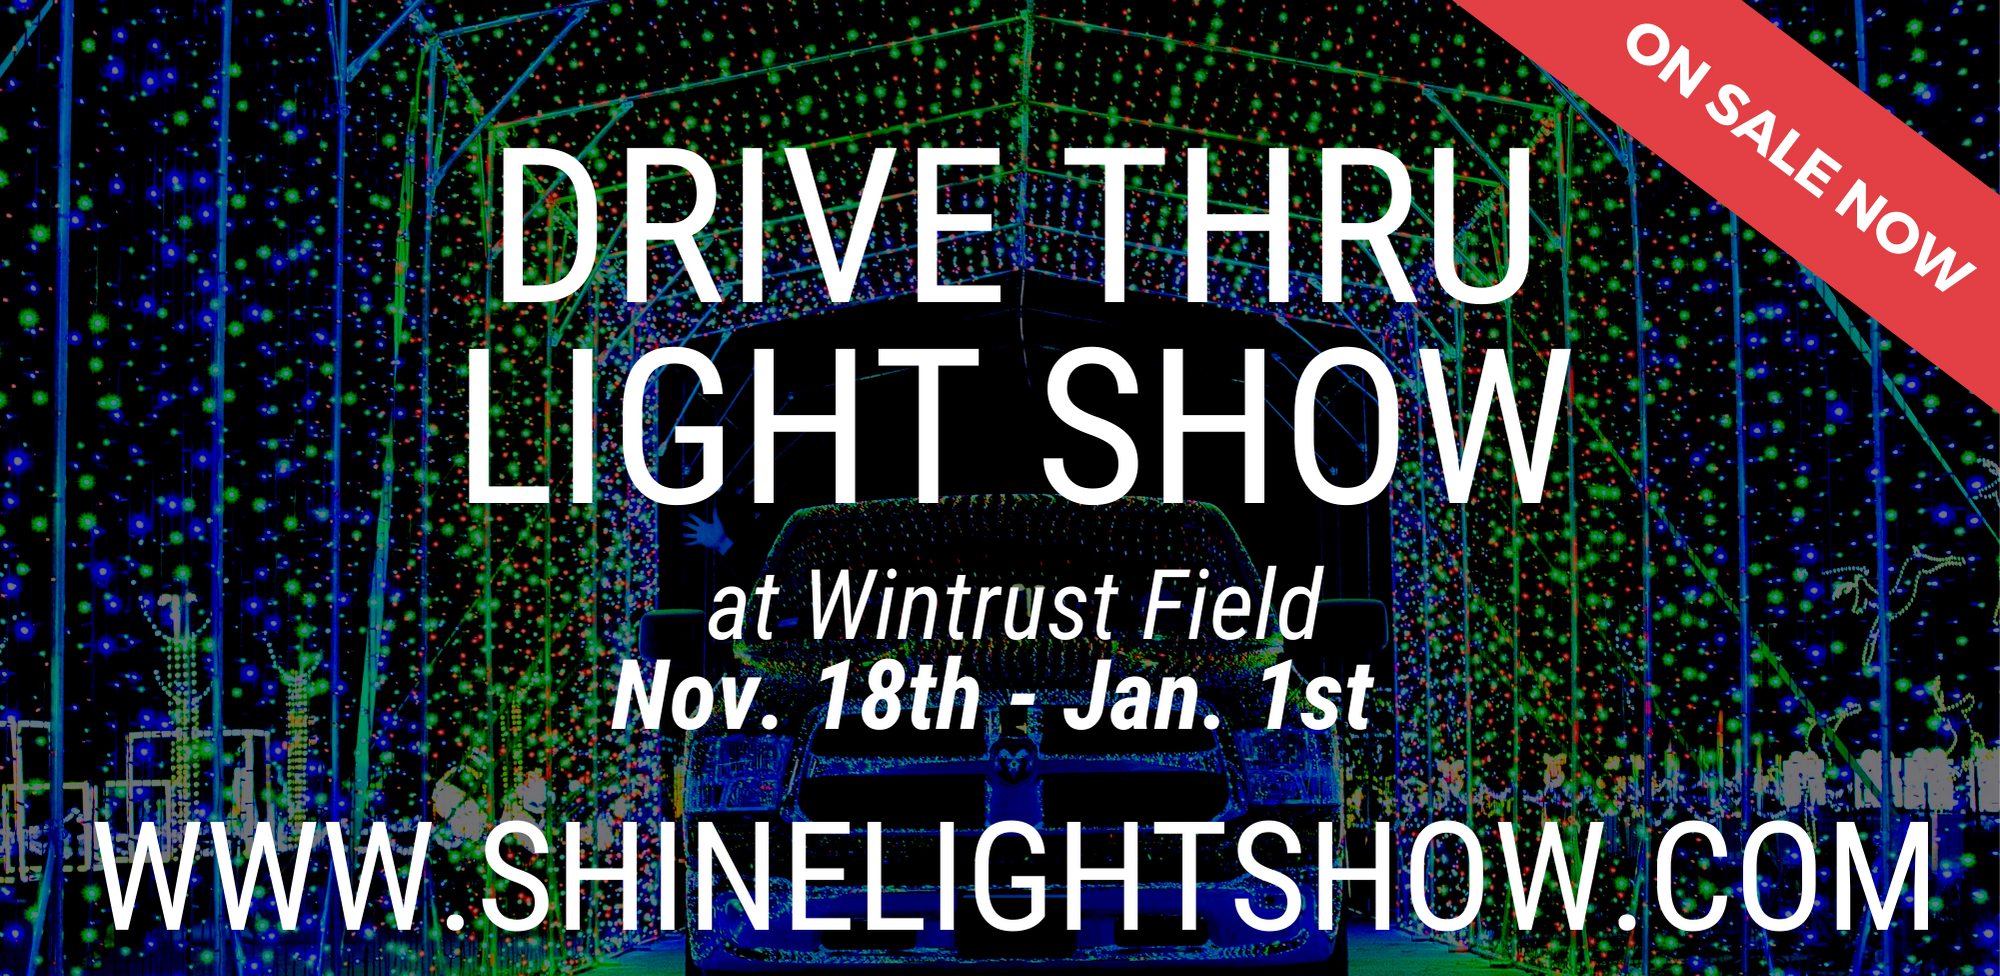 Drive-Thru Light Show Returns to Wintrust Field